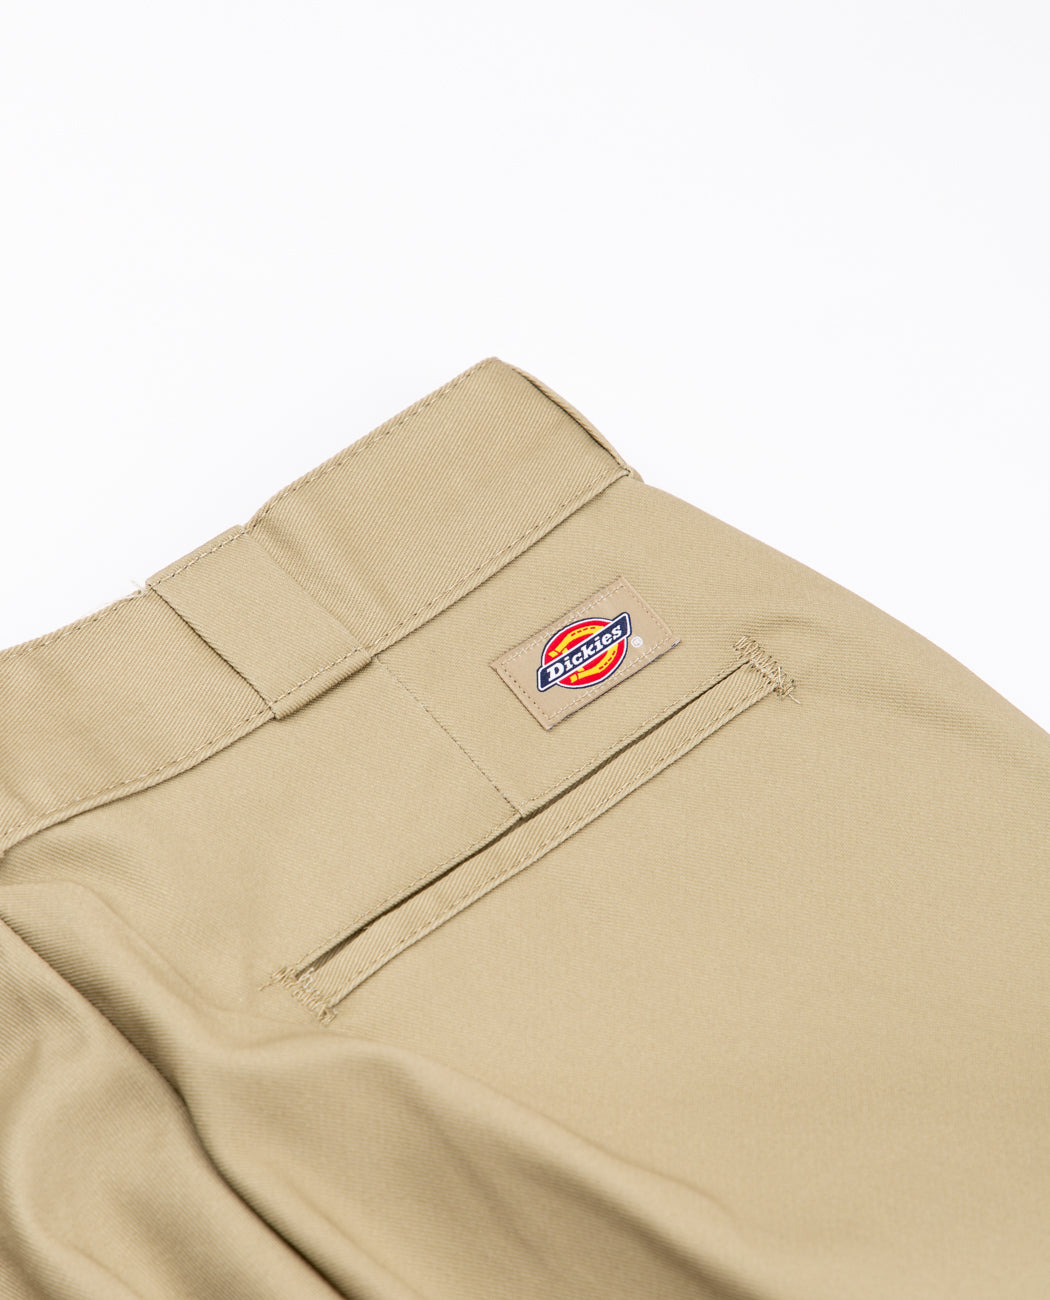 Dickies Original 874 Work Trousers - Khaki • Price »